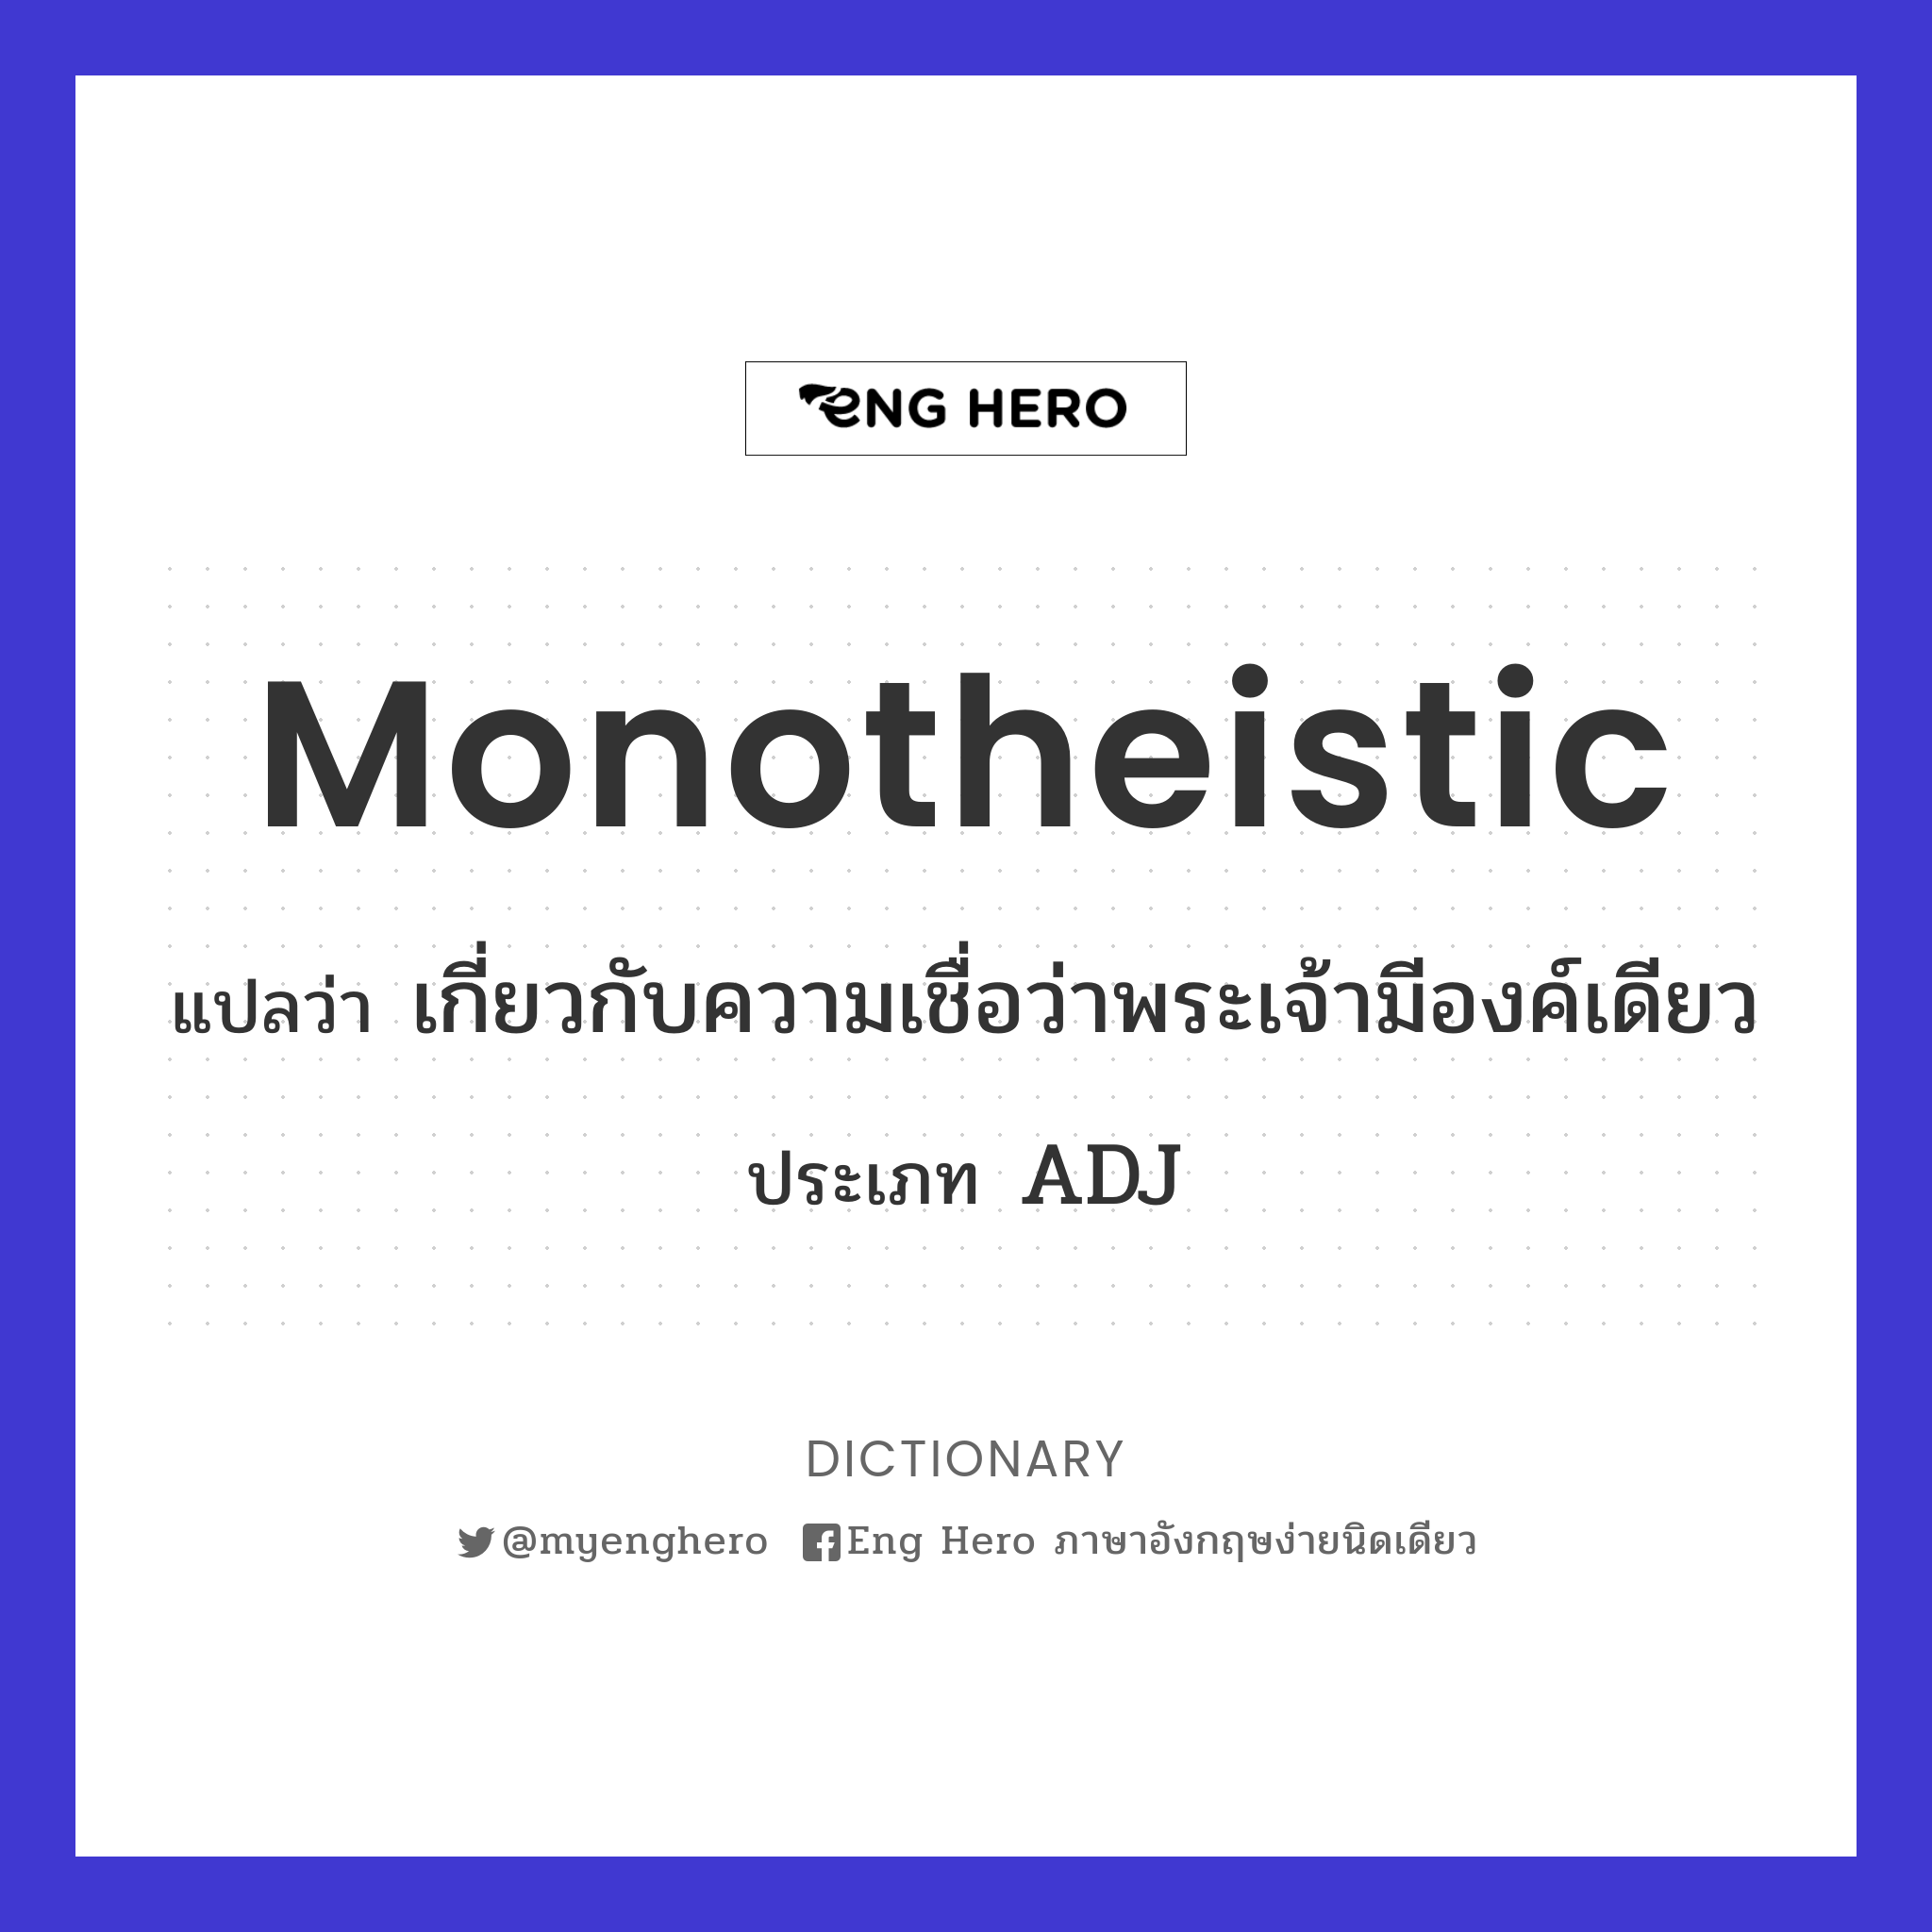 monotheistic